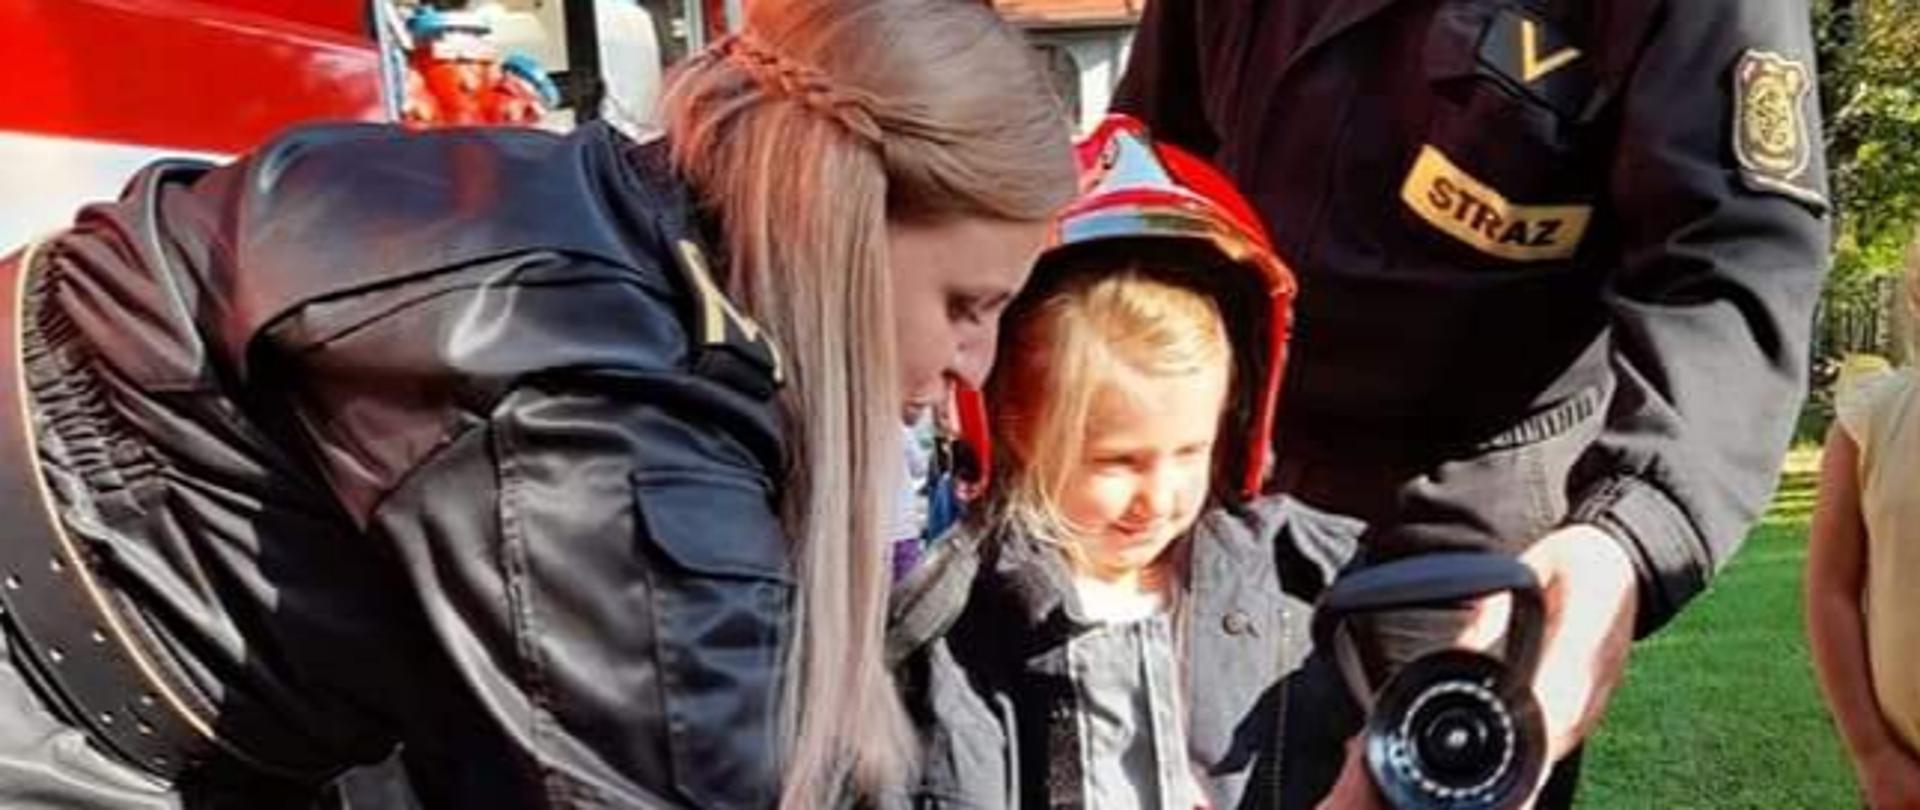 strażacy pomagają małej dziewczynce ubranej w kurtkę strażacka, w tle czerwony wóz strażacki